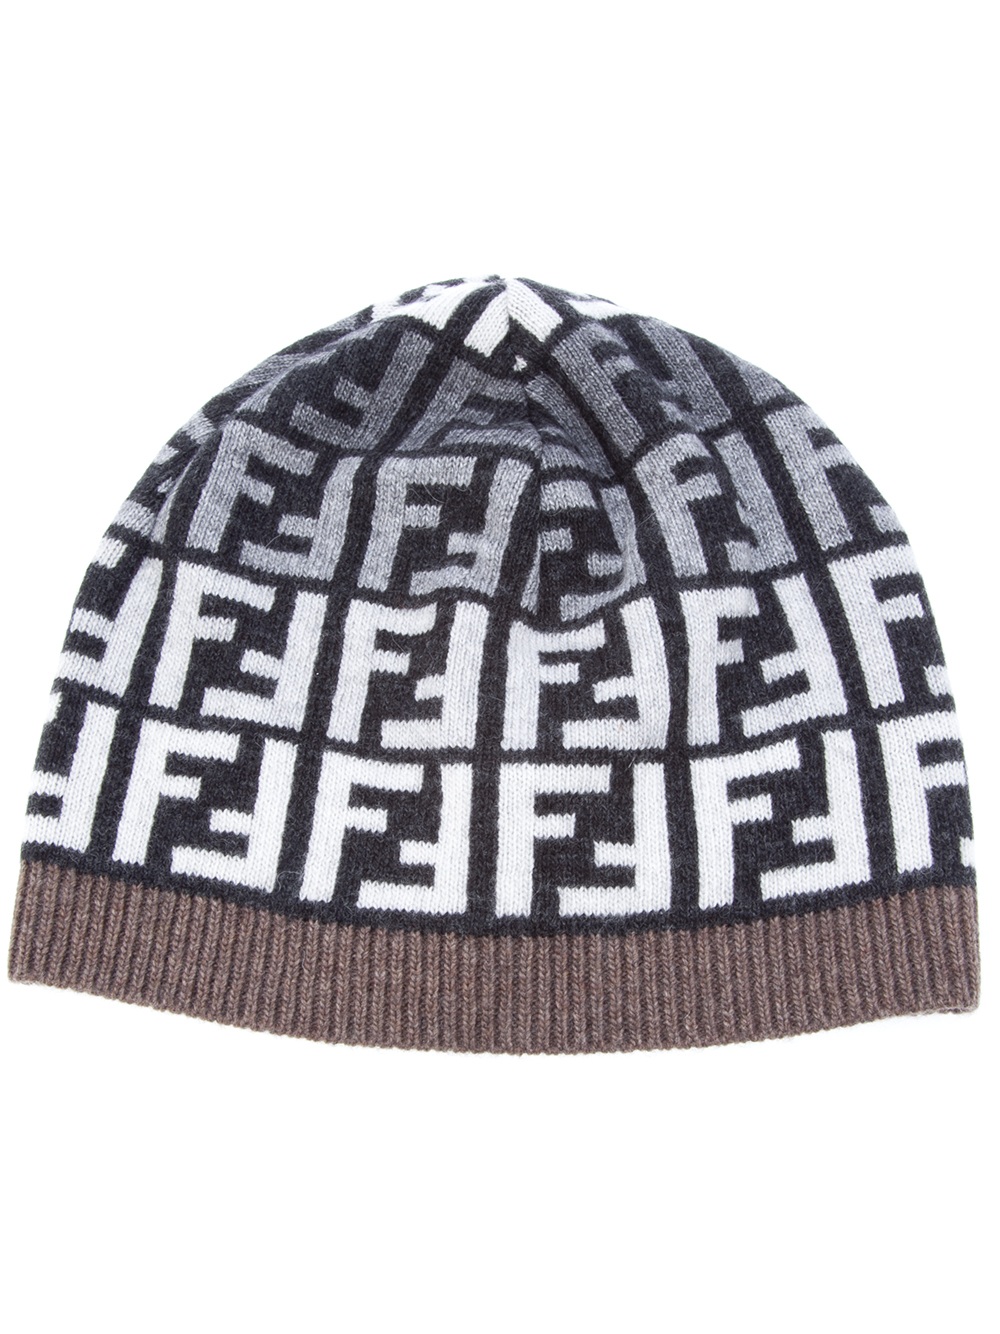 Fendi Logo Knit Beanie Hat in Grey (Grey) - Lyst